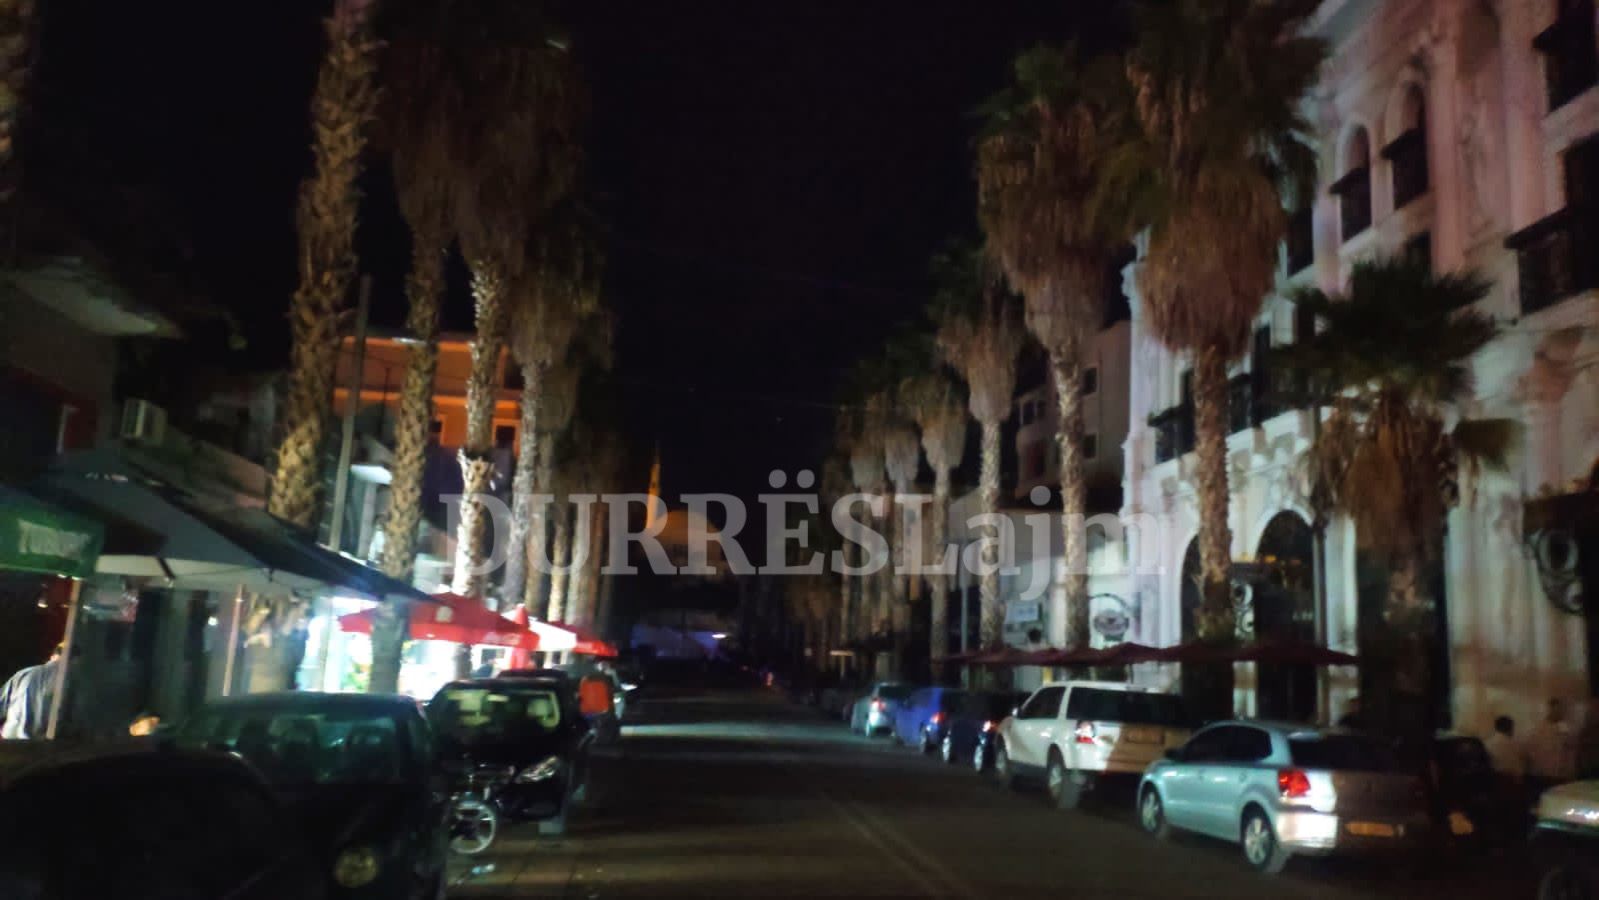 Probleme me energjinë elektrike në lagjet nr. 3 dhe 4 në Durrës , qytetari: Po na prishen pajisjet elektrike! (VIDEO)